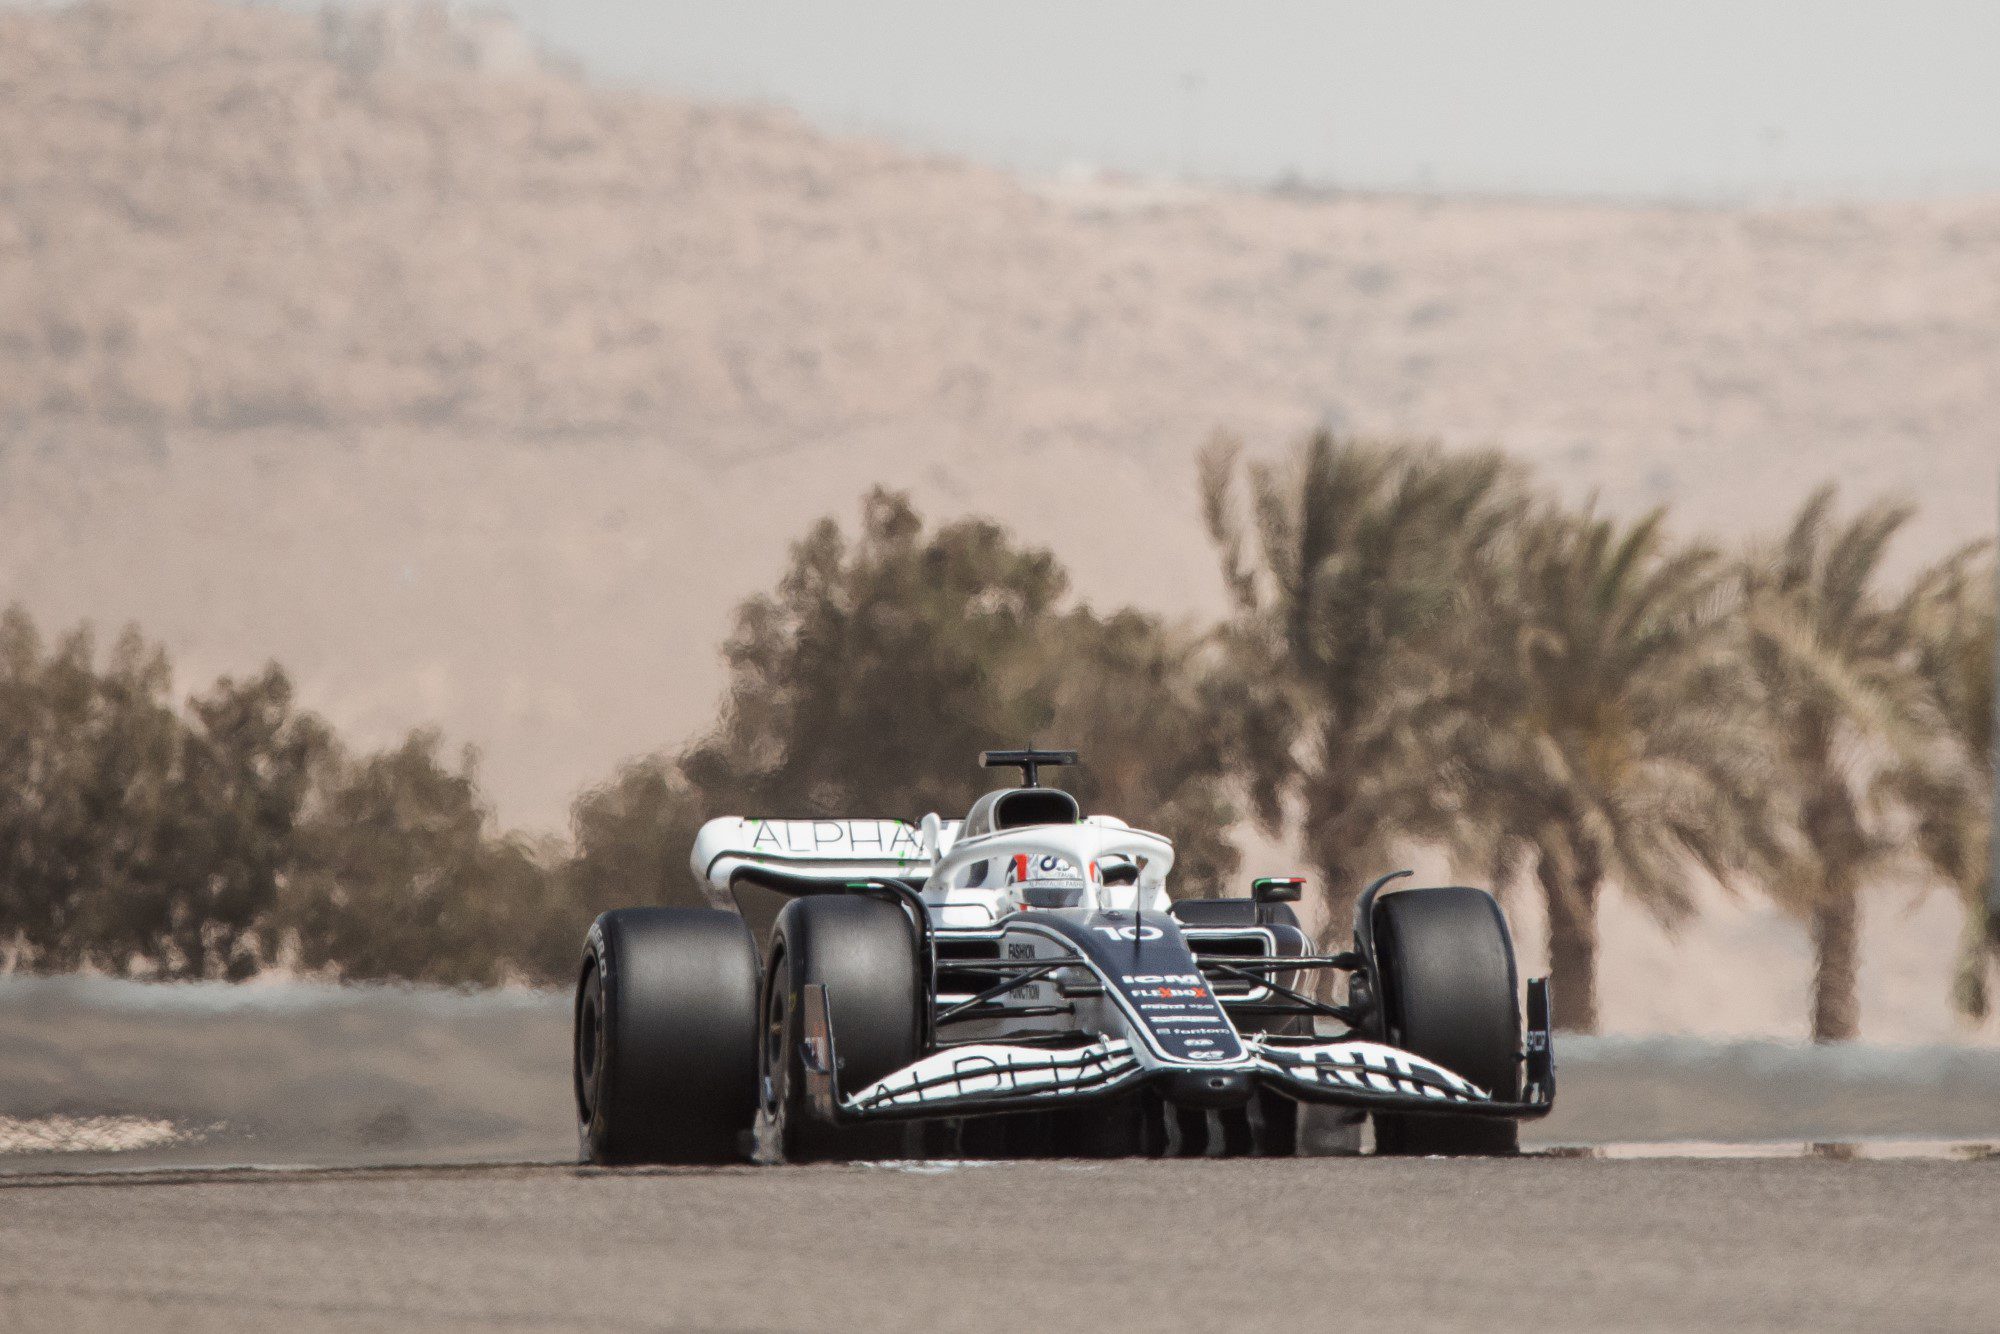 Tempo Real: GP do Bahrein de F1 2023 - treinos livres ao vivo